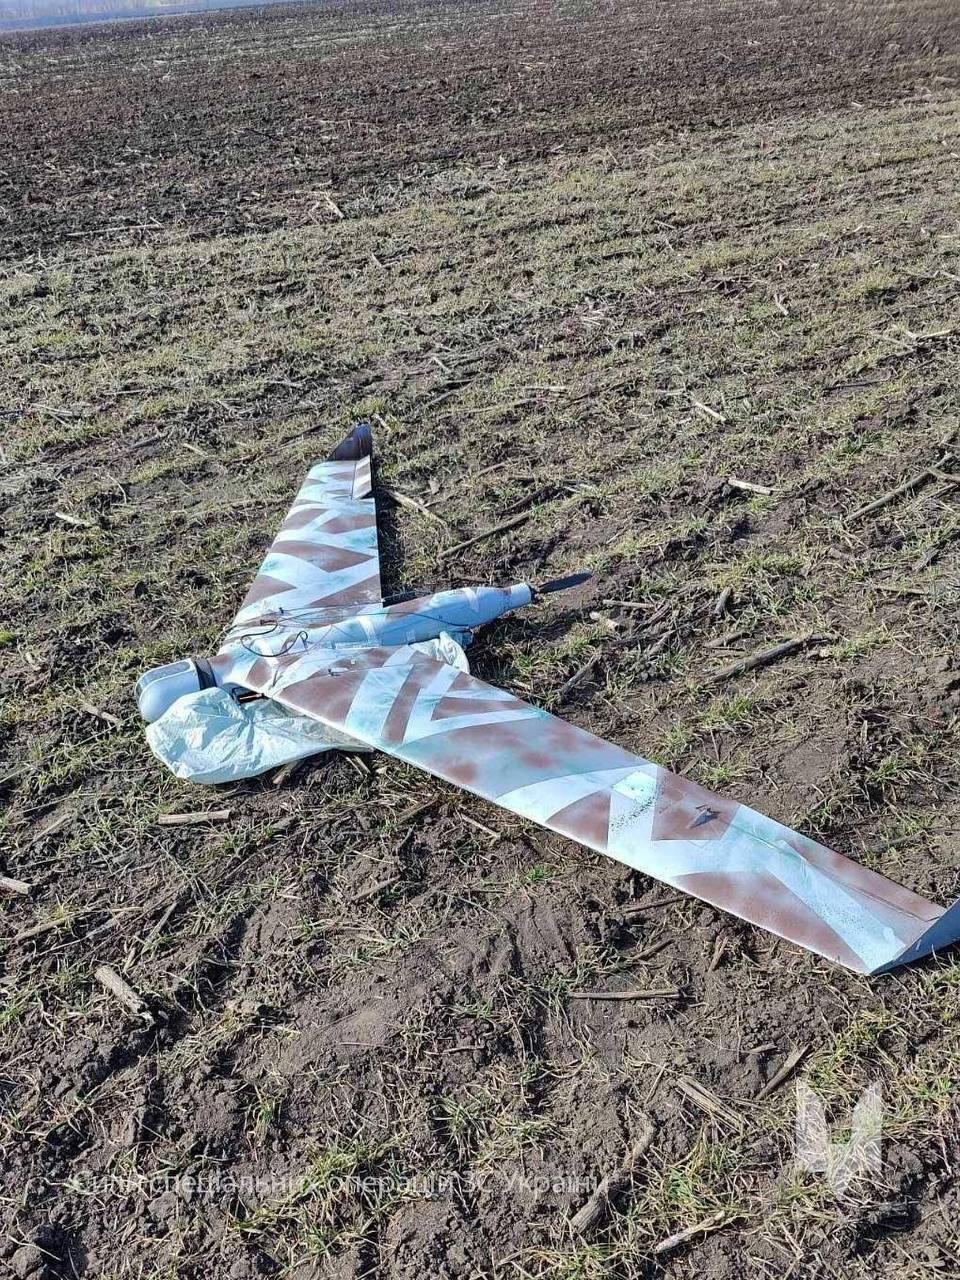 "Подтвердил квалификацию": снайпер ССО сбил вражеский дрон ZALA. Фото